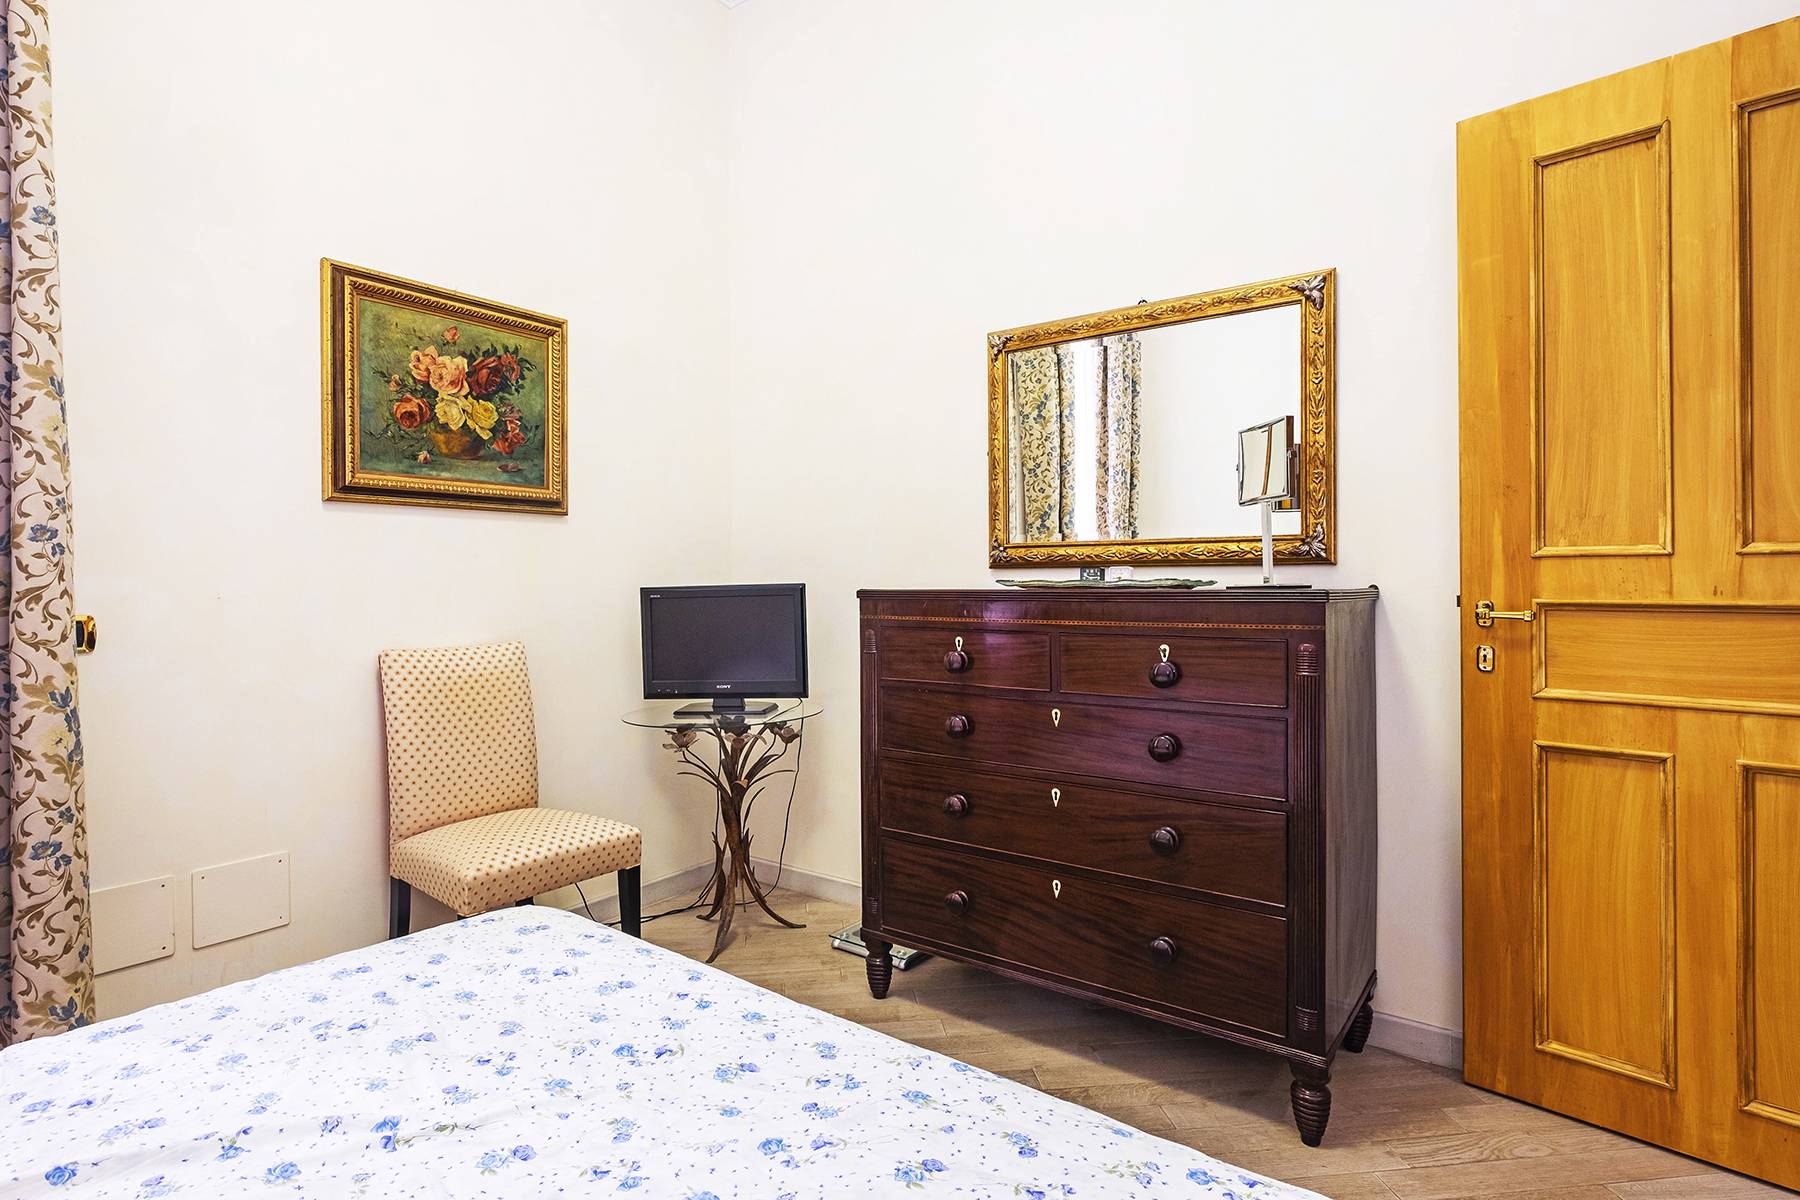 Appartamento in Vendita a Roma: 4 locali, 110 mq - Foto 14